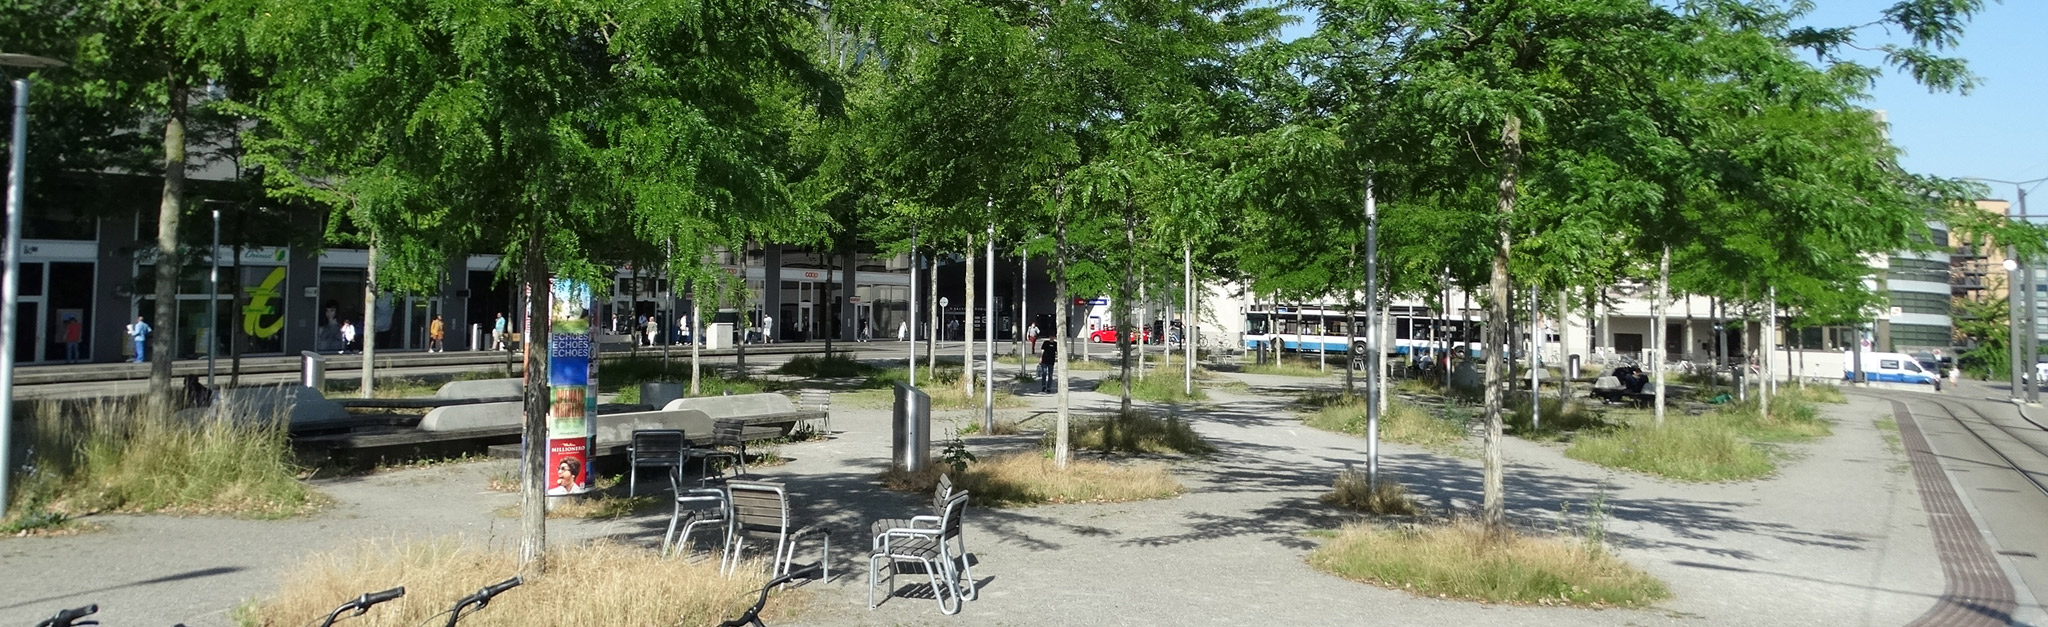 Ein Park mit Bänken und Bäumen mitten in der Stadt.